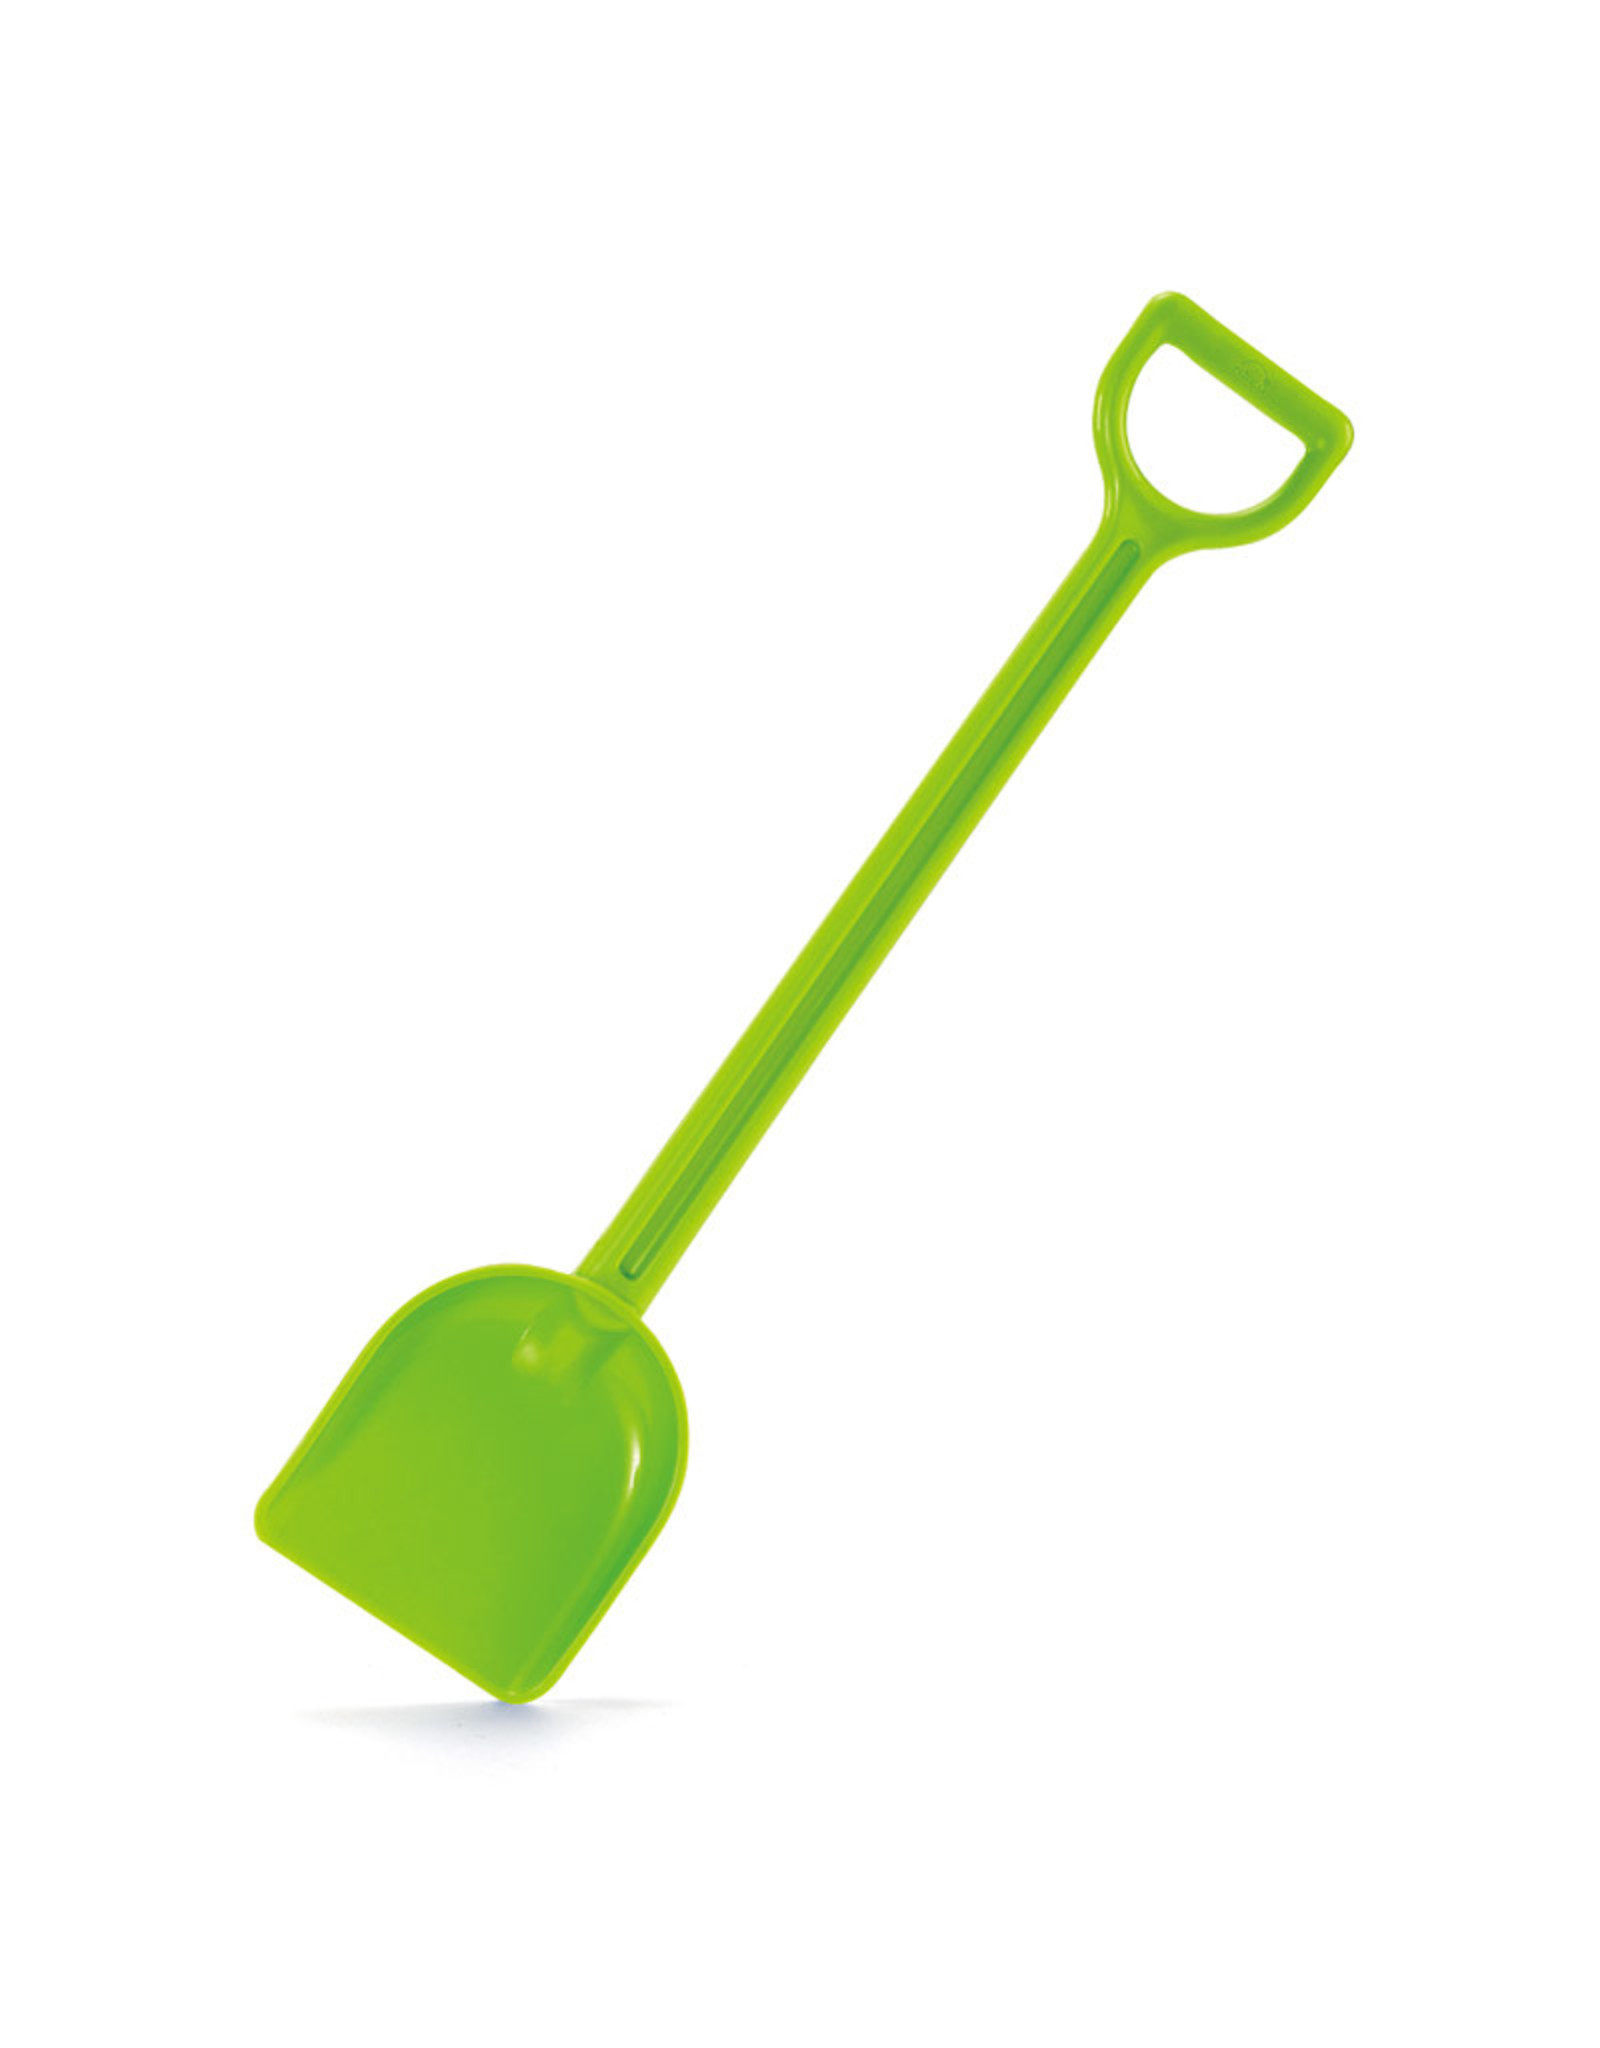 Hape Mighty Shovel, Green